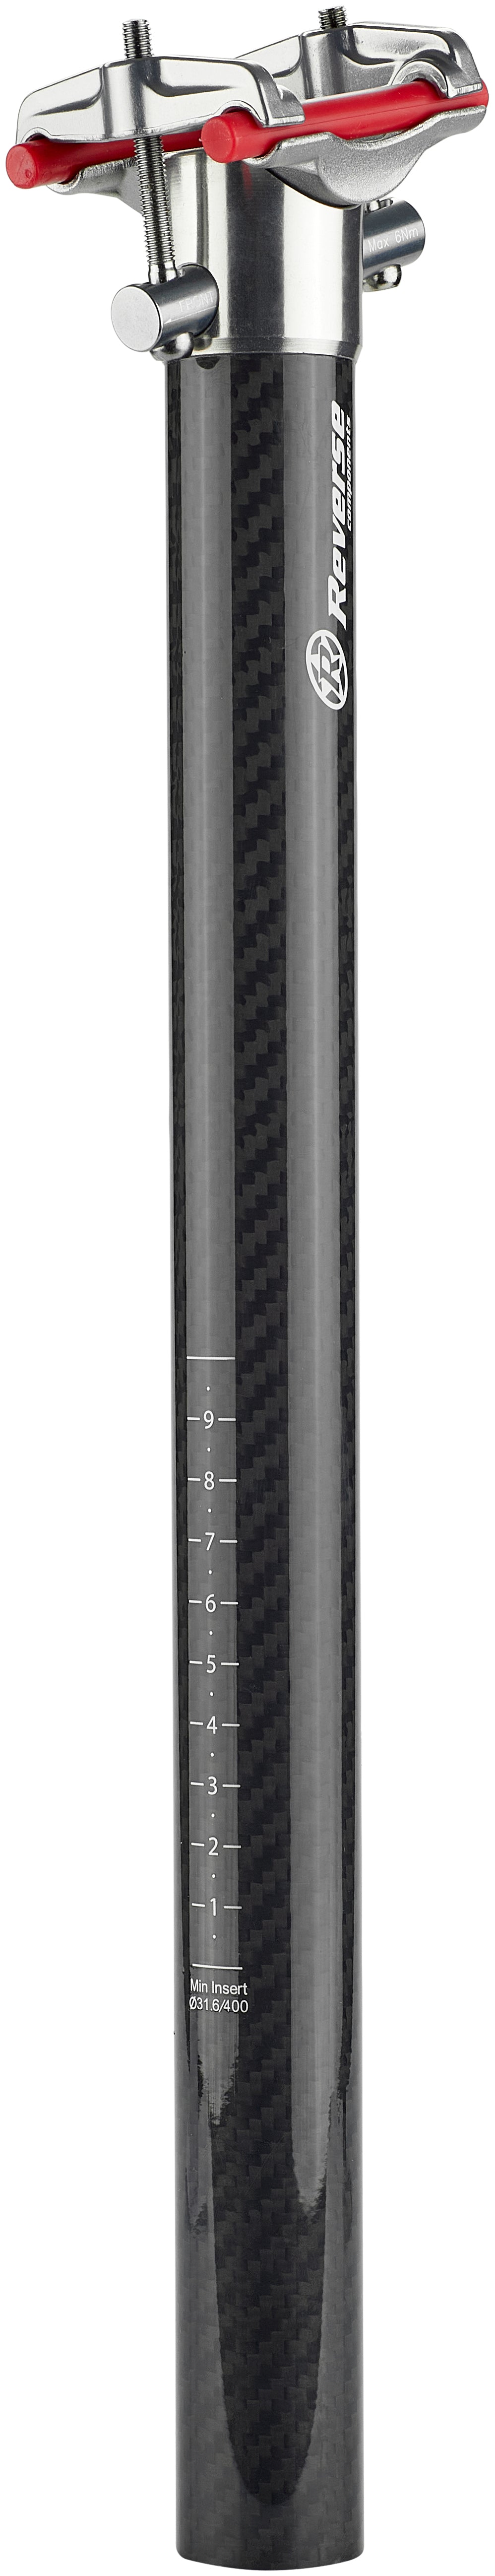 Tige de selle Reverse XC 3-K Ø31,6mm